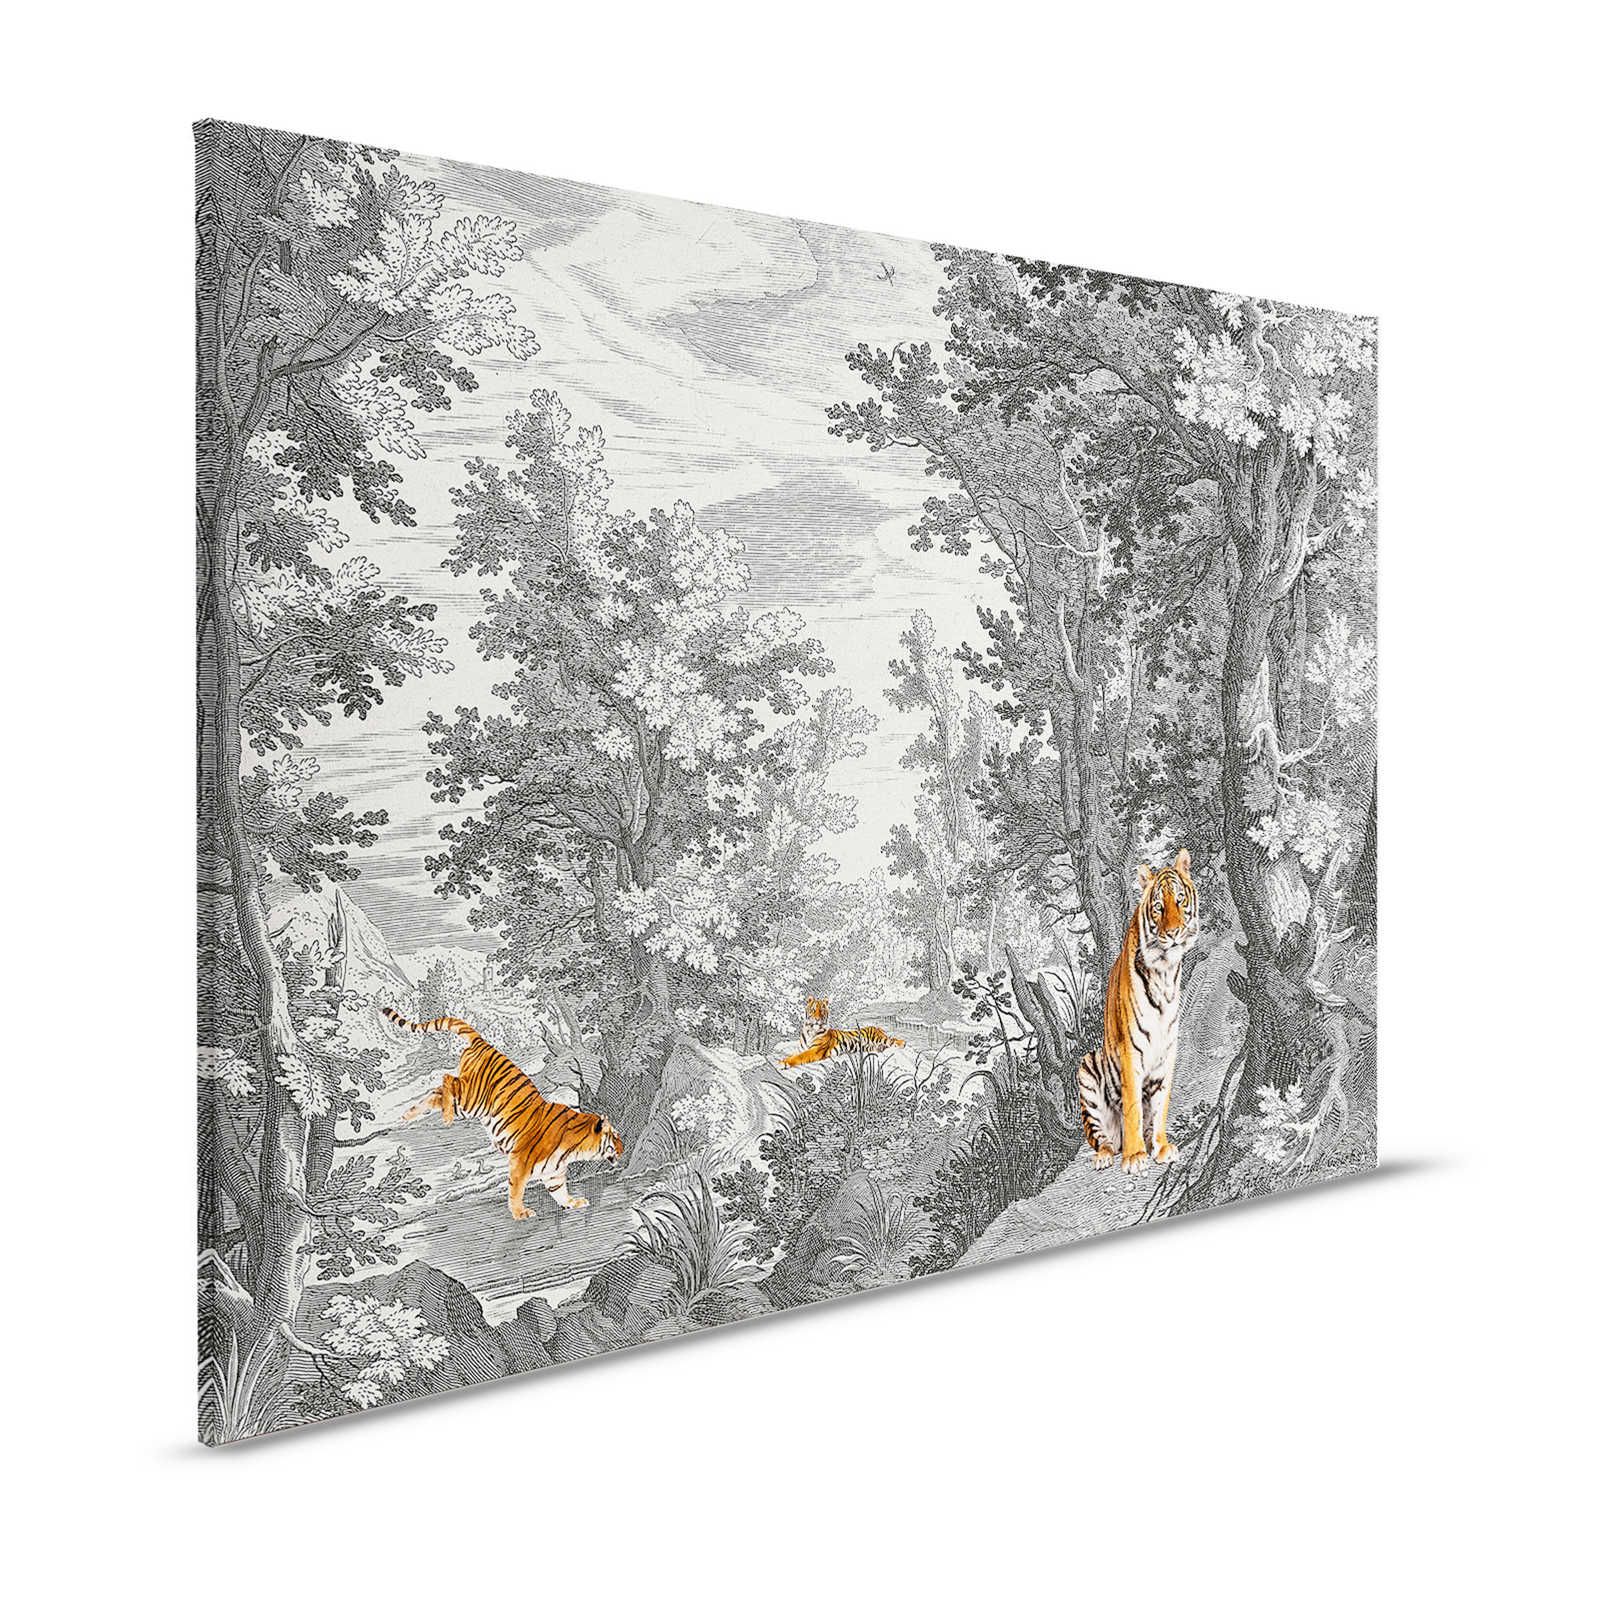 Fancy Forest 2 - Canvas schilderij Klassiek landschap met tijger - 1,20 m x 0,80 m
